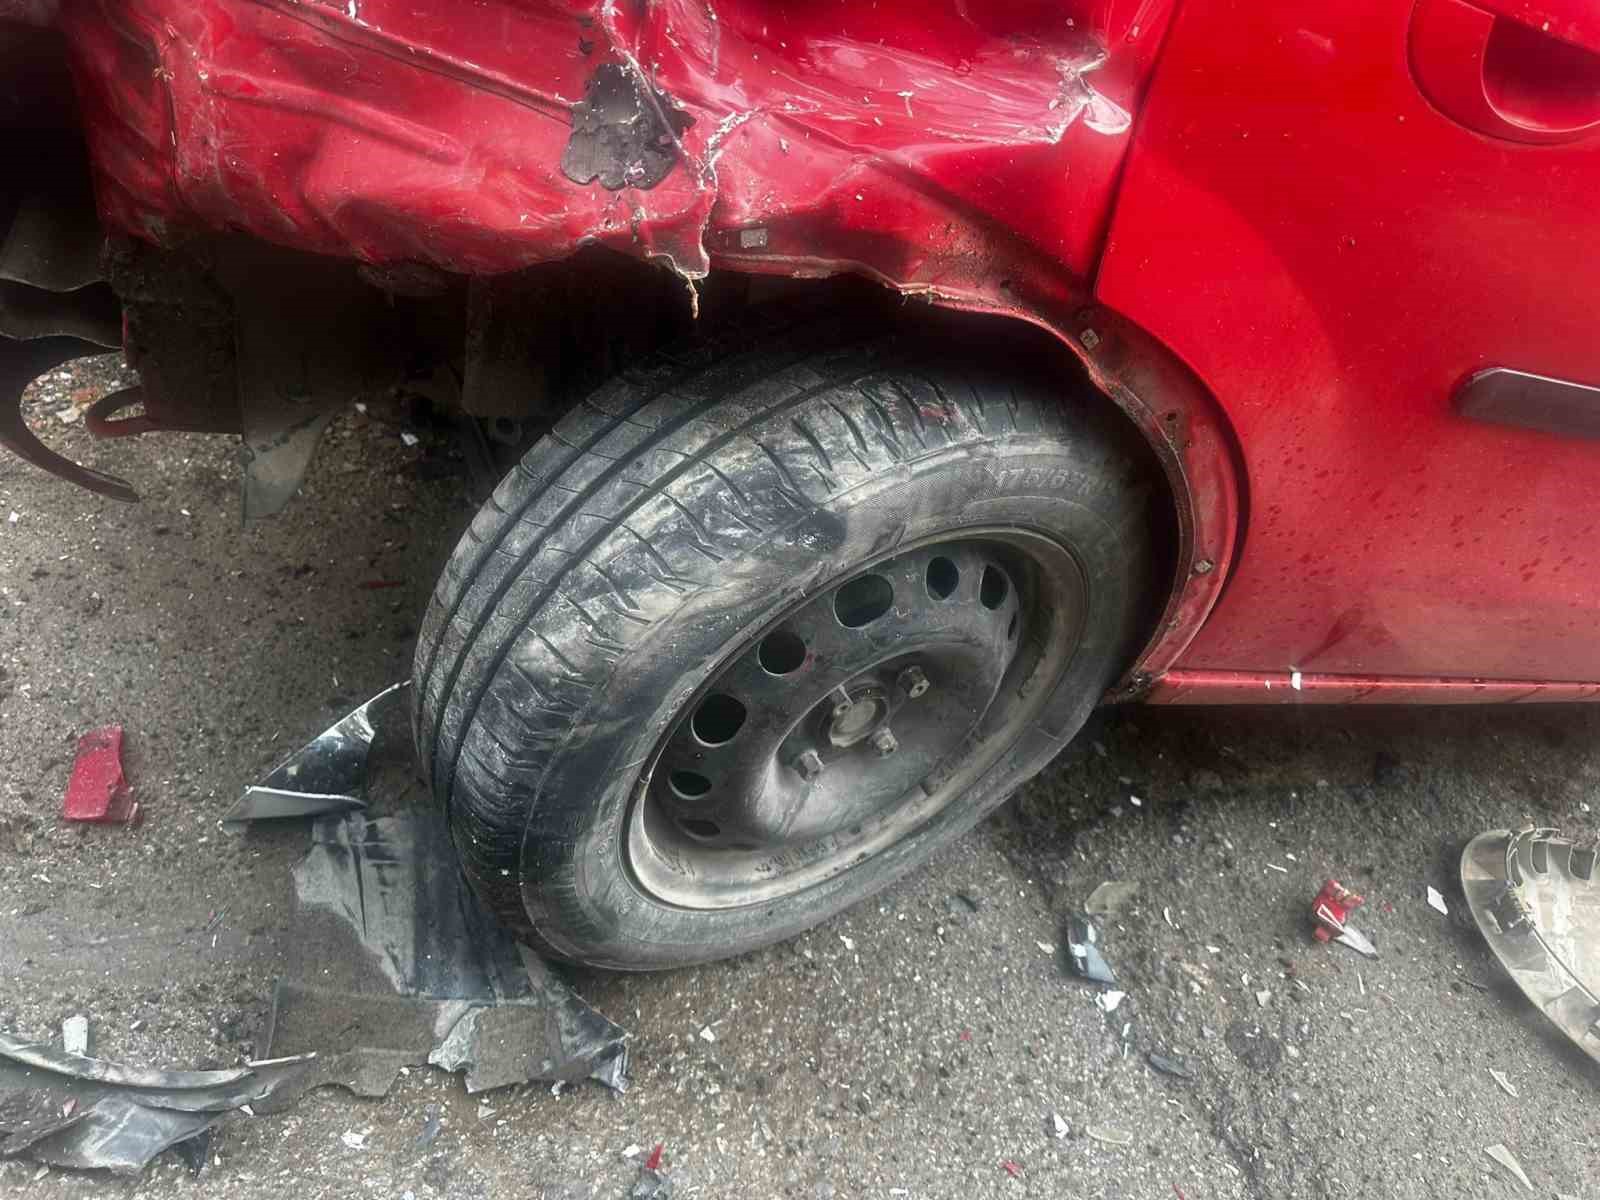 milas’ta trafik kazası: 4 yaralı